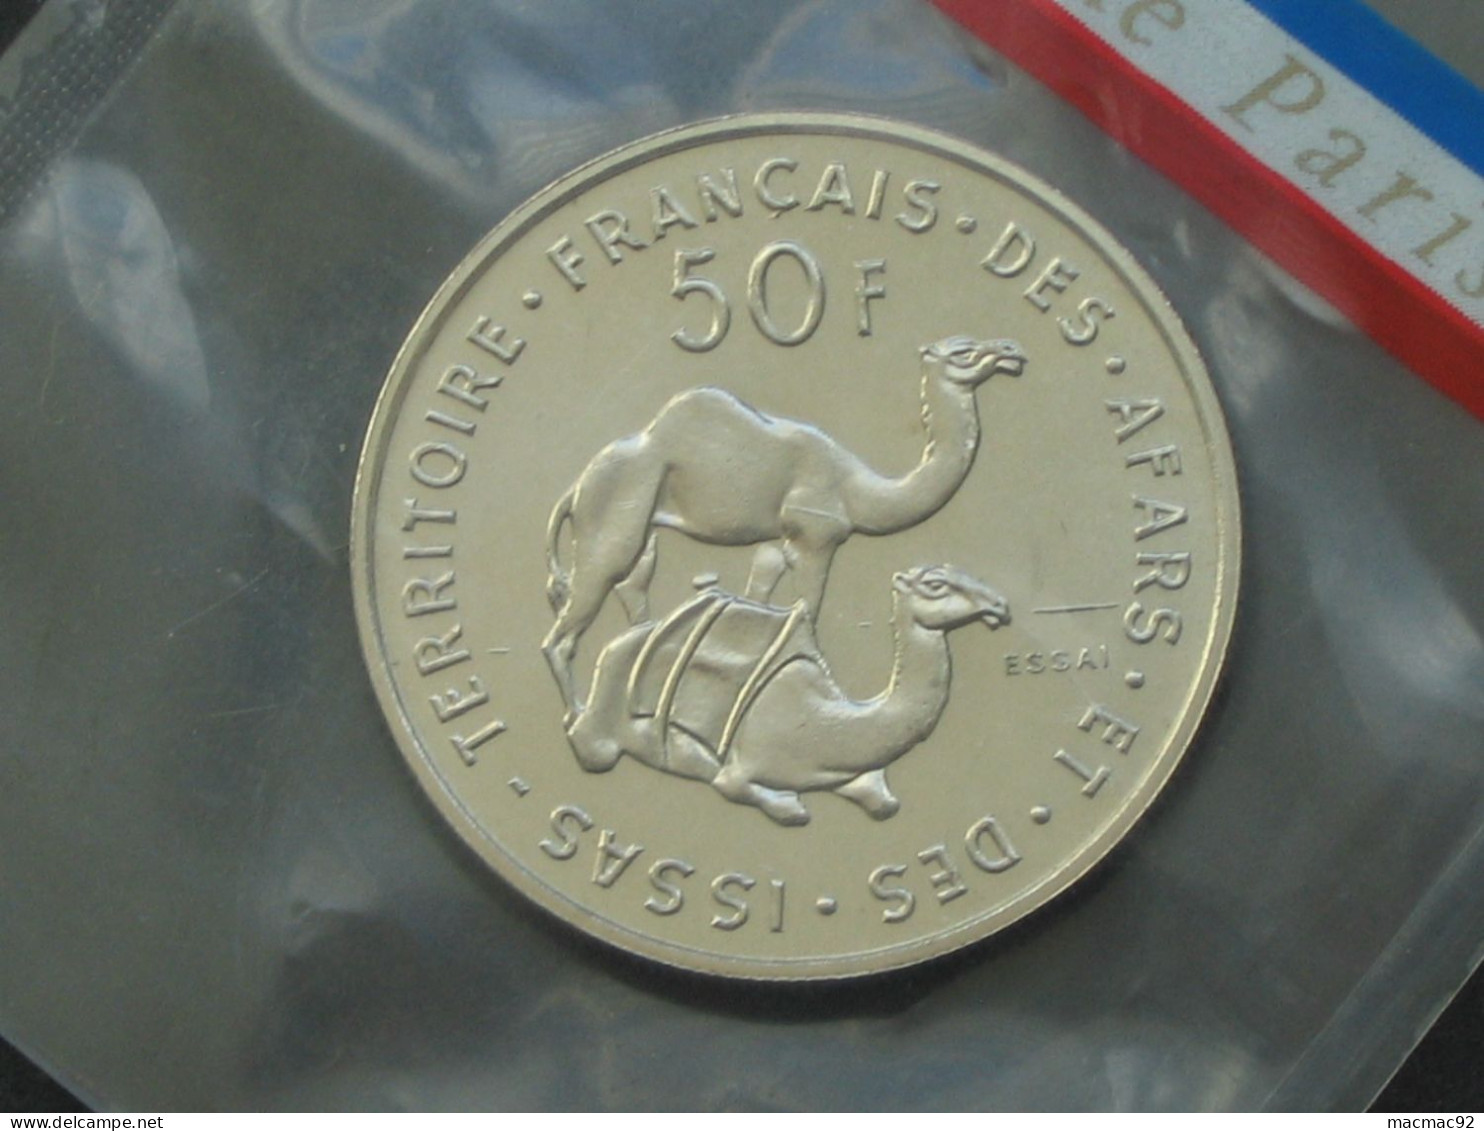 Rare Essai De 50 Francs 1970 - Territoire Francais Des Afars Et Des Issas   **** EN ACHAT IMMEDIAT   **** - Djibouti (Afars Et Issas)